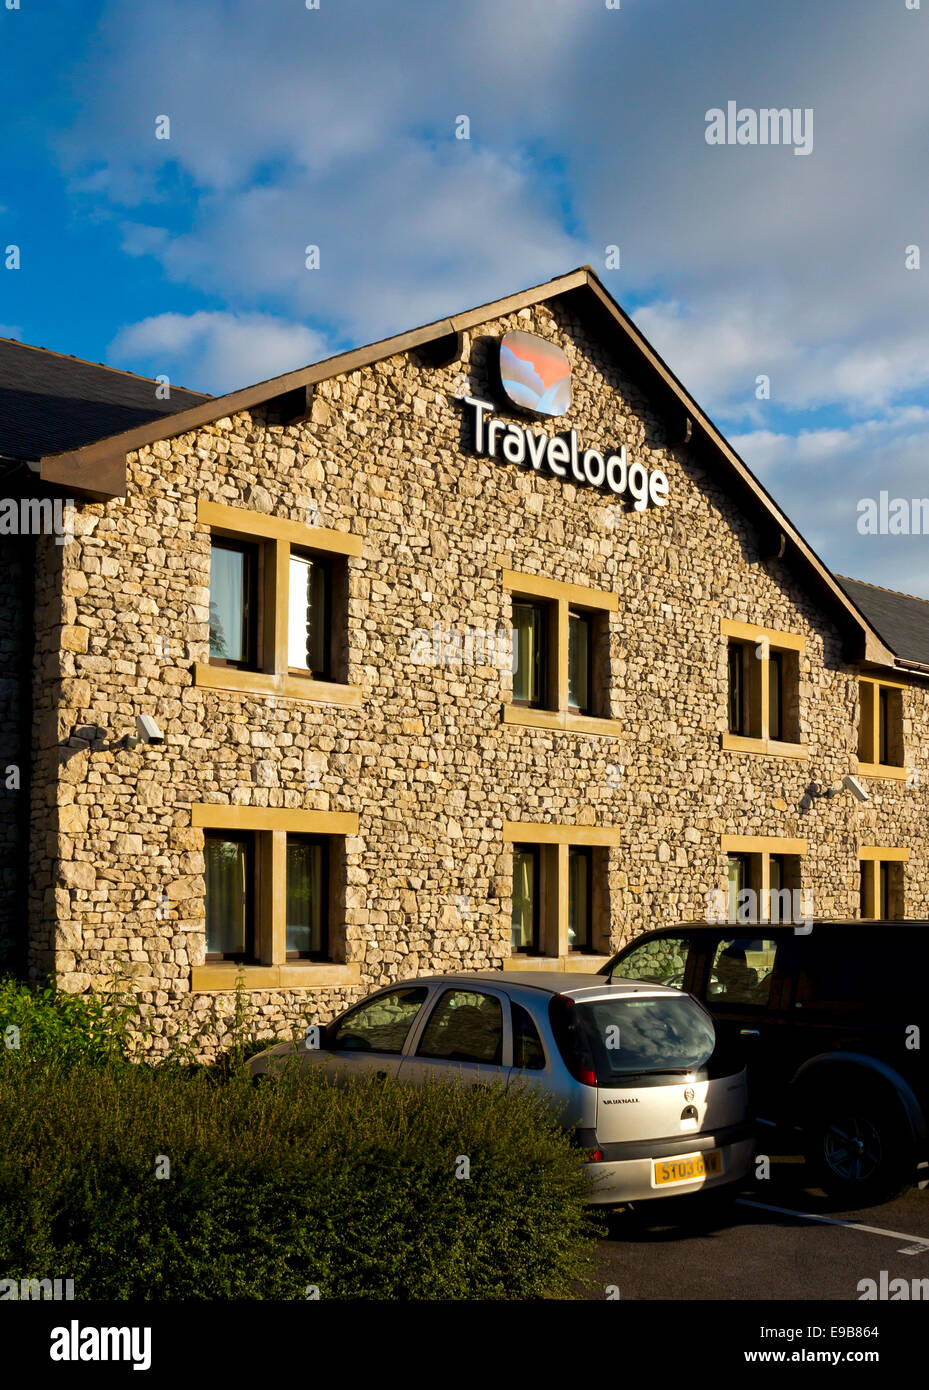 Travelodge Hotel nelle vicinanze Kendal Cumbria Lake District UK parte di una catena di hotel economici si trovano in tutta la Gran Bretagna Foto Stock